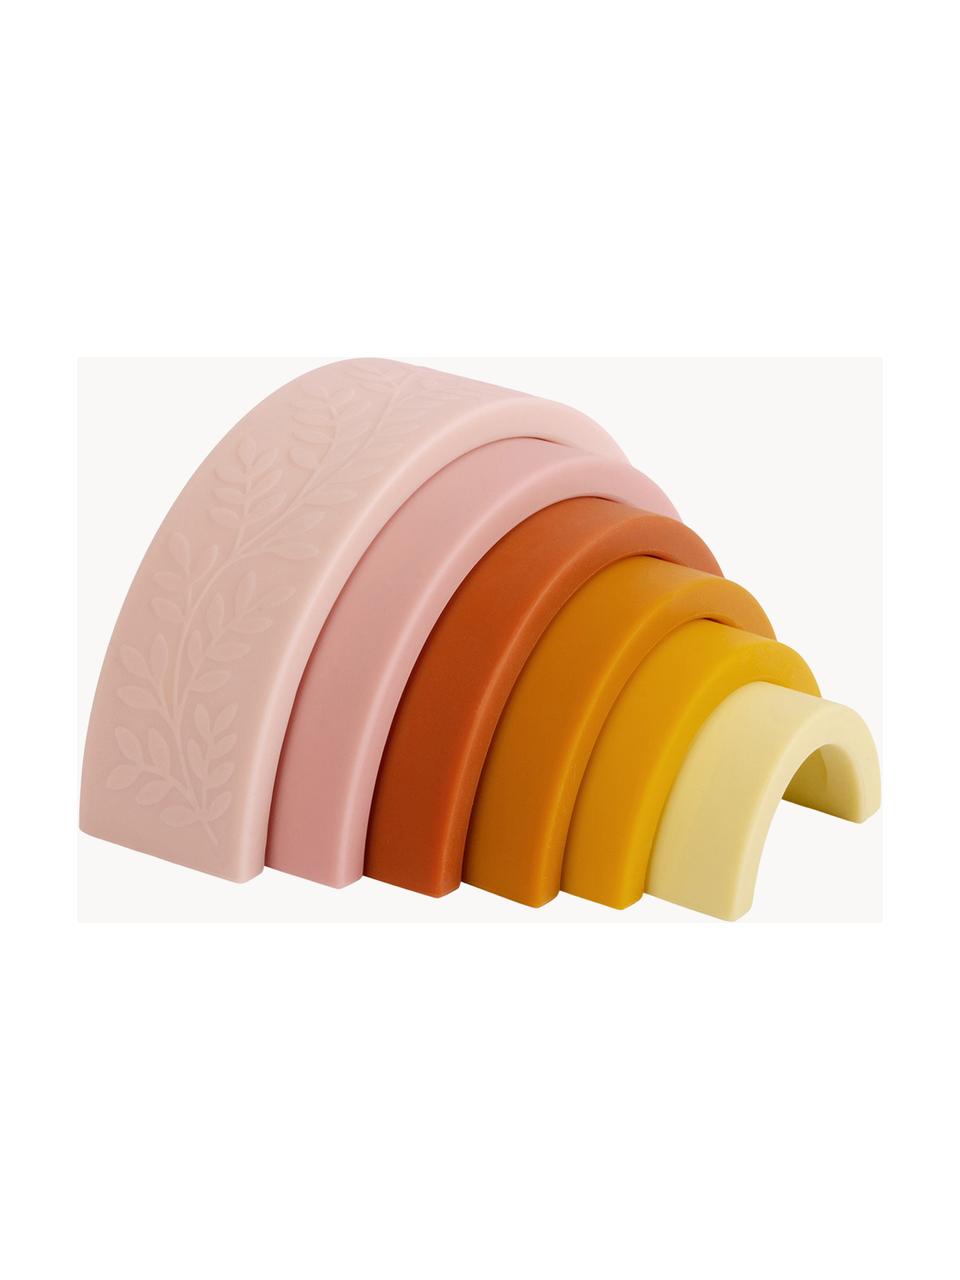 Zabawka do układania Rainbow, Silikon, Odcienie różowego, odcienie żółtego, odcienie pomarańczowego, S 15 cm x W 7 cm